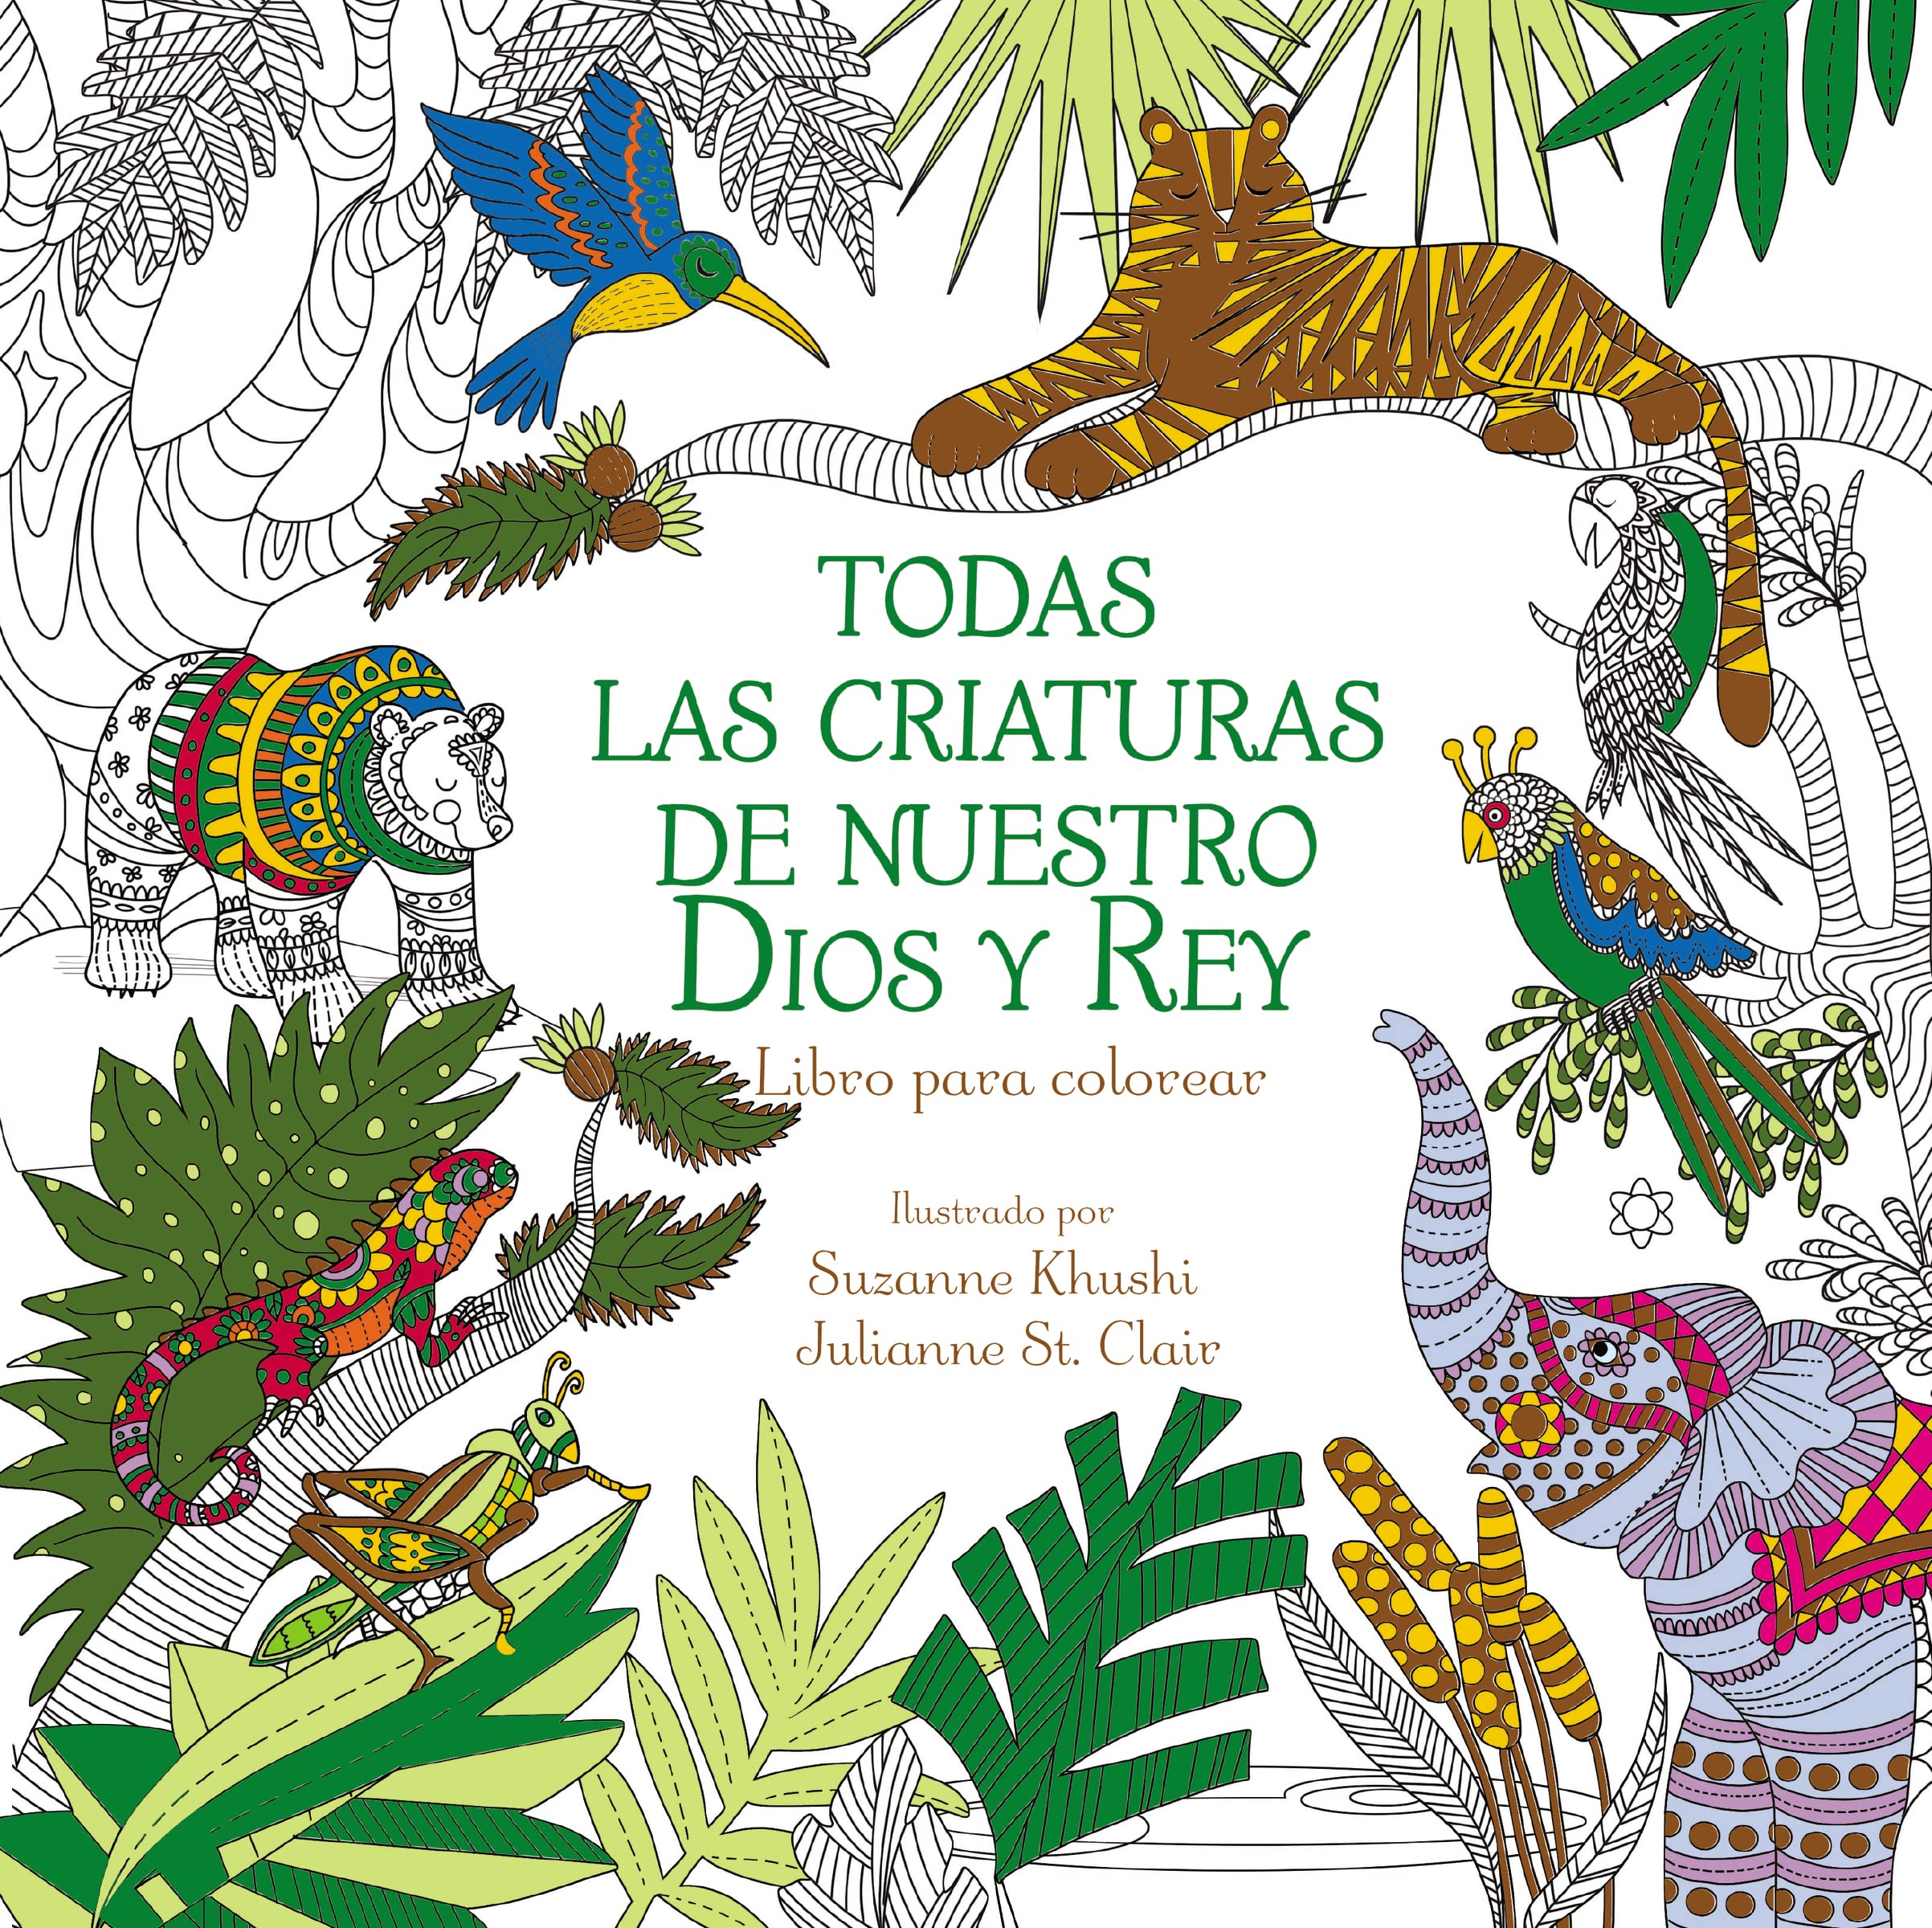 Todas las criaturas de nuestro Dios y Rey: Libro para colorear (Spanish Edition)